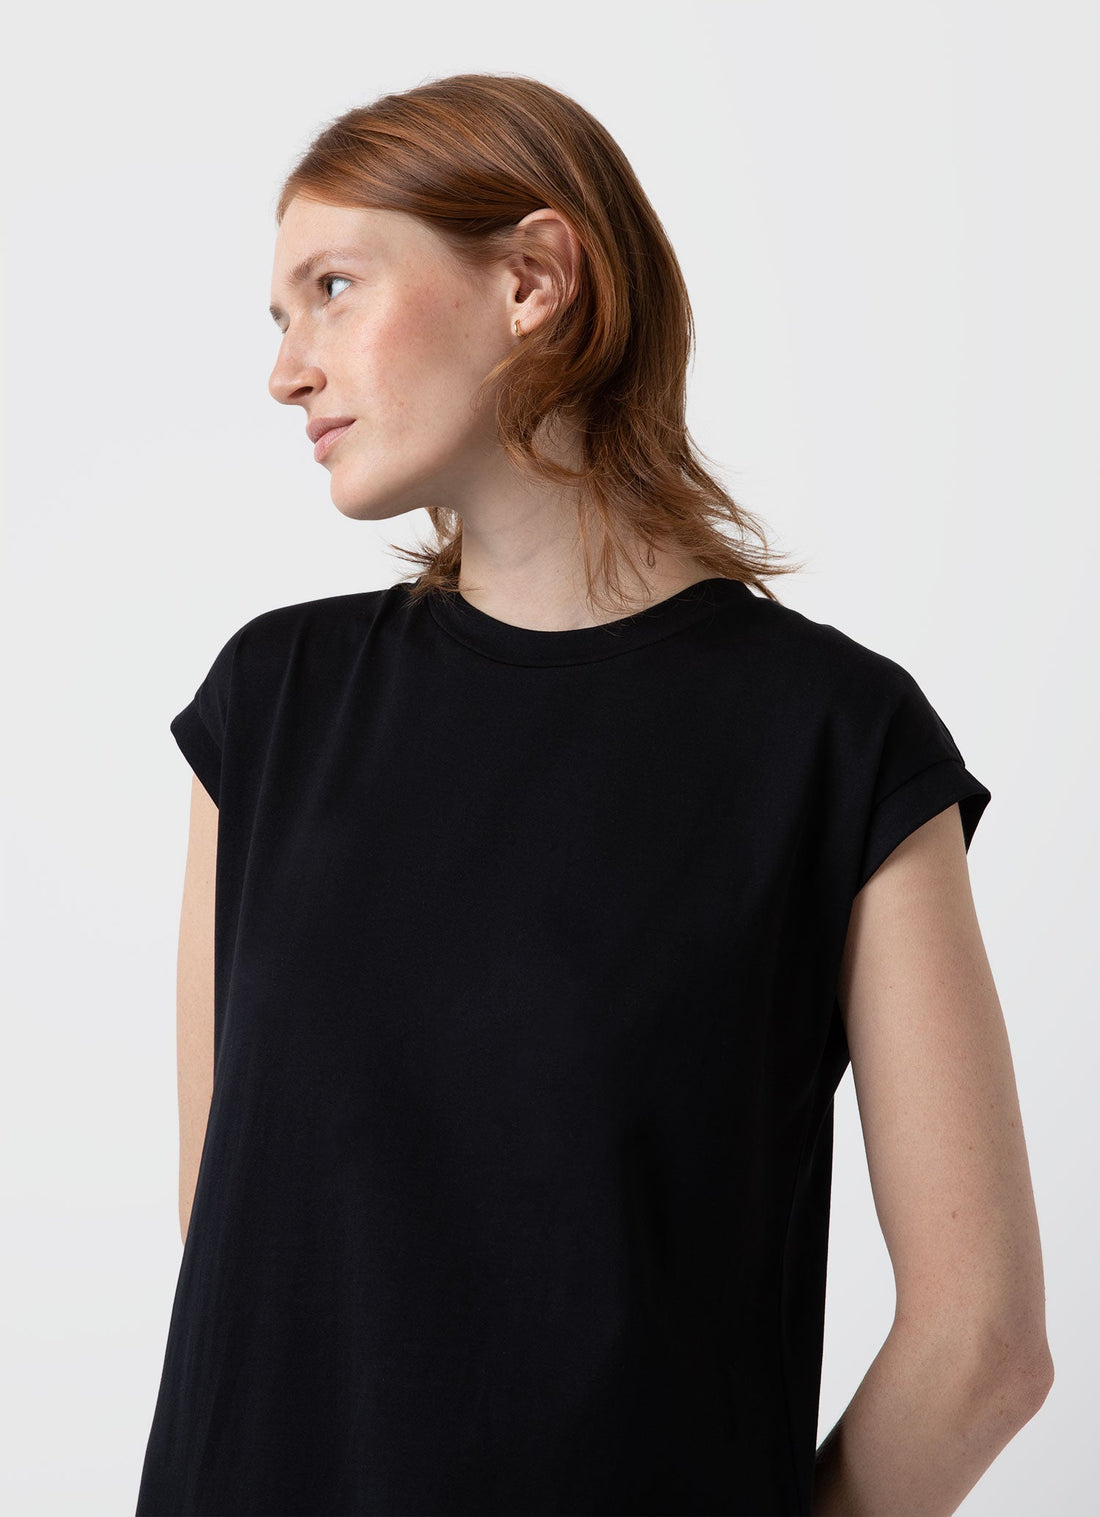 Women's T-shirt Dress in Black